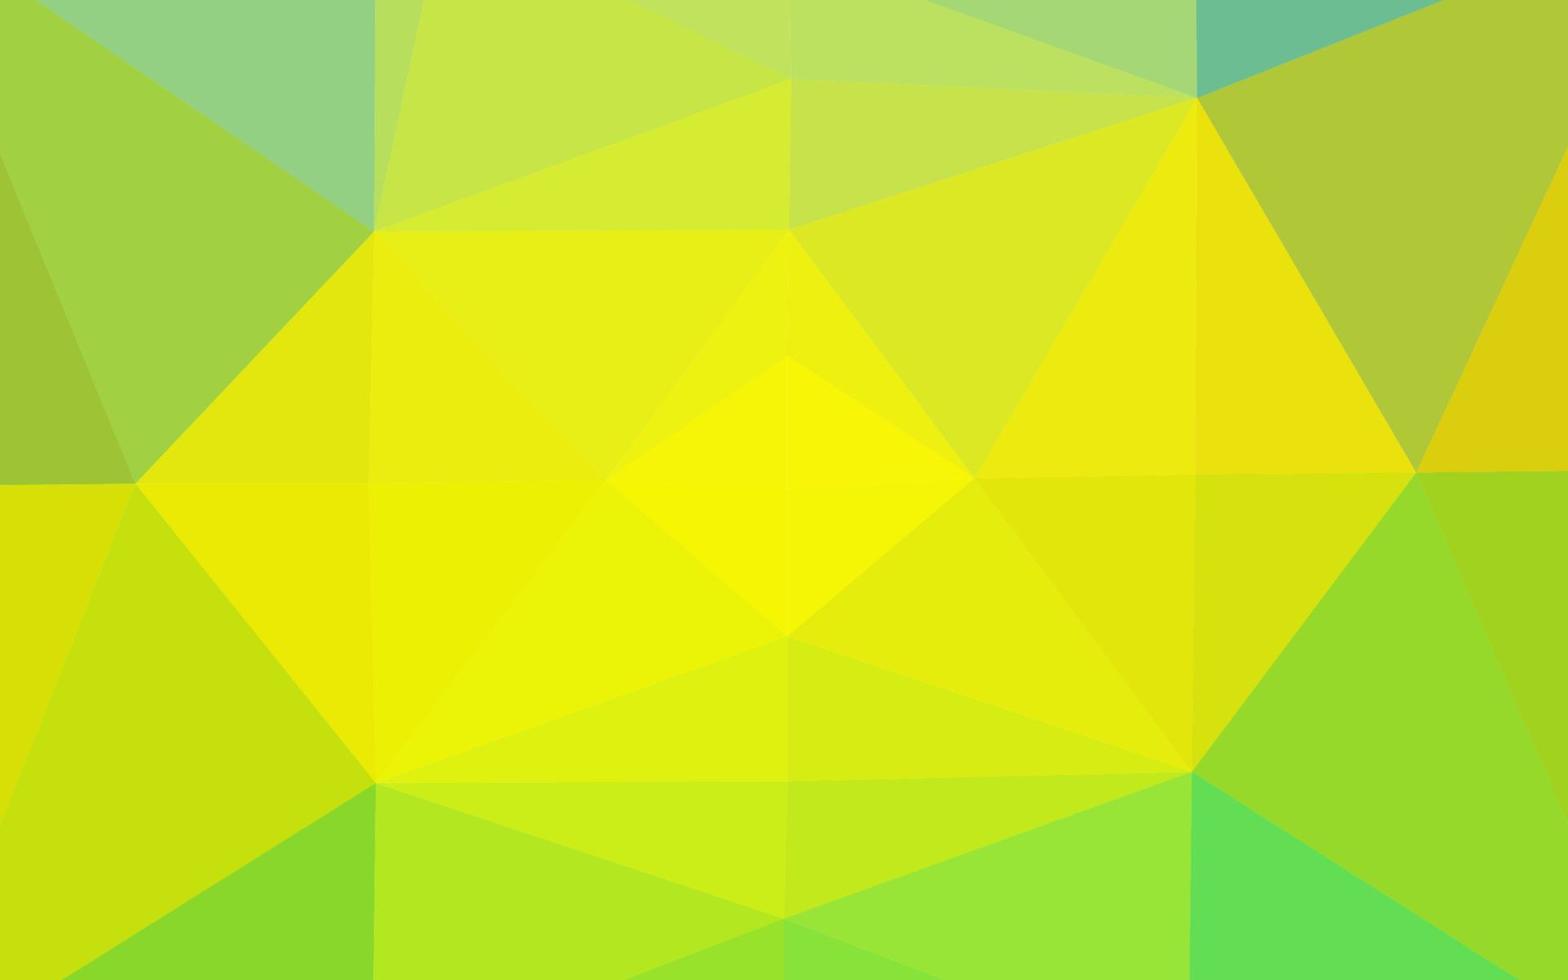 luz verde, layout abstrato de polígono de vetor amarelo.